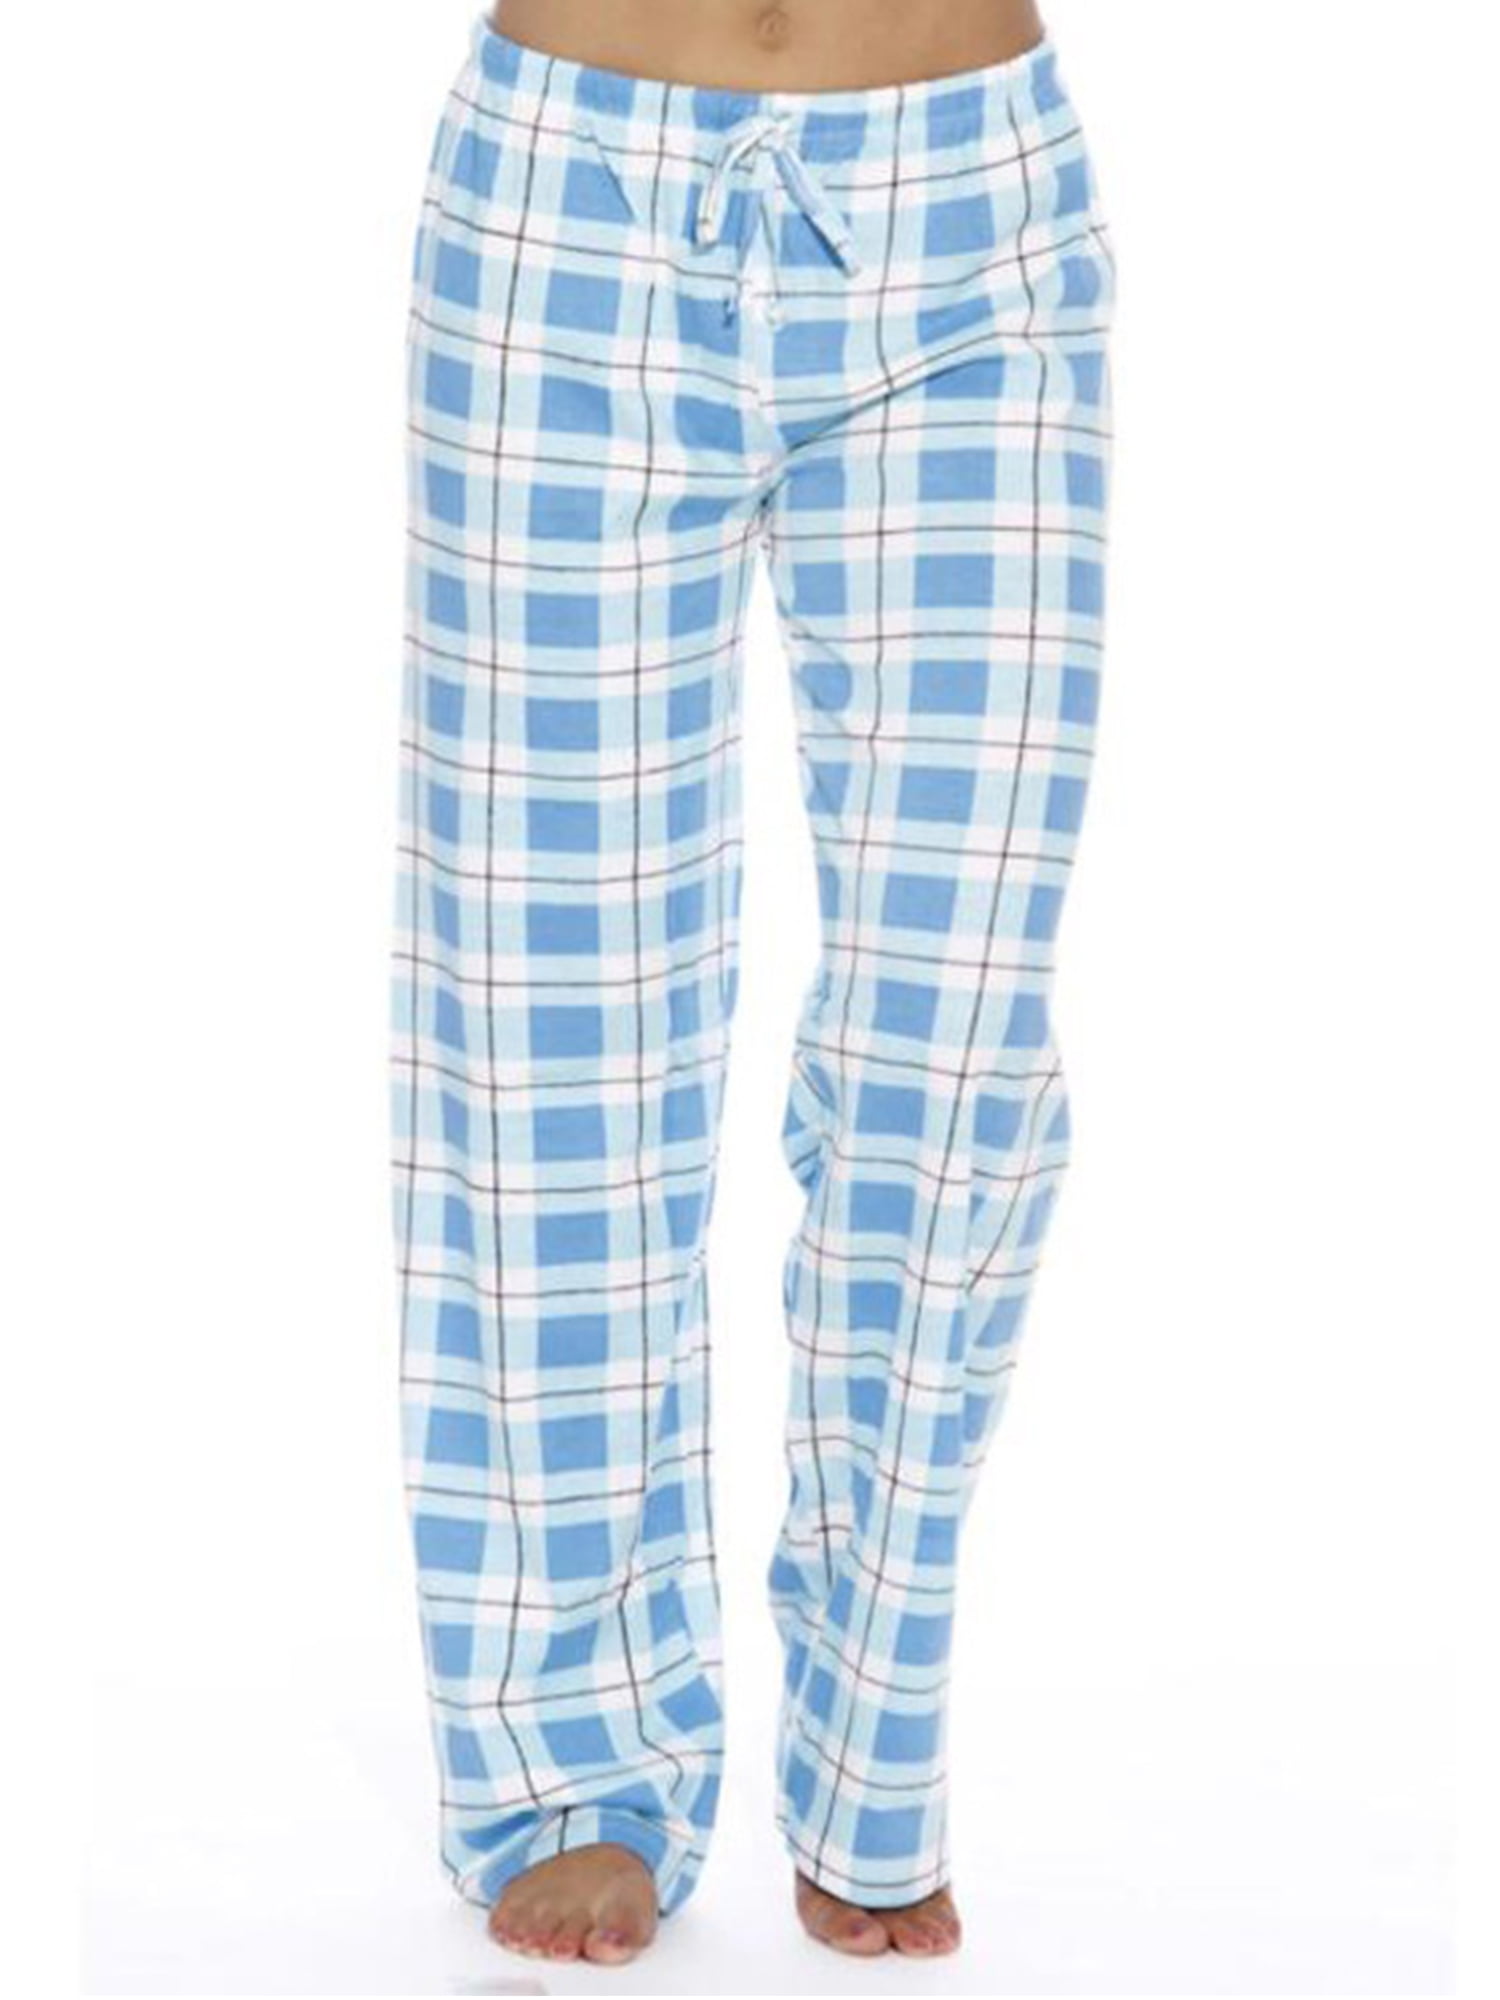 Women Buffalo Lounge Pants Comfy Pajama Bottom with Pockets Stretch ...